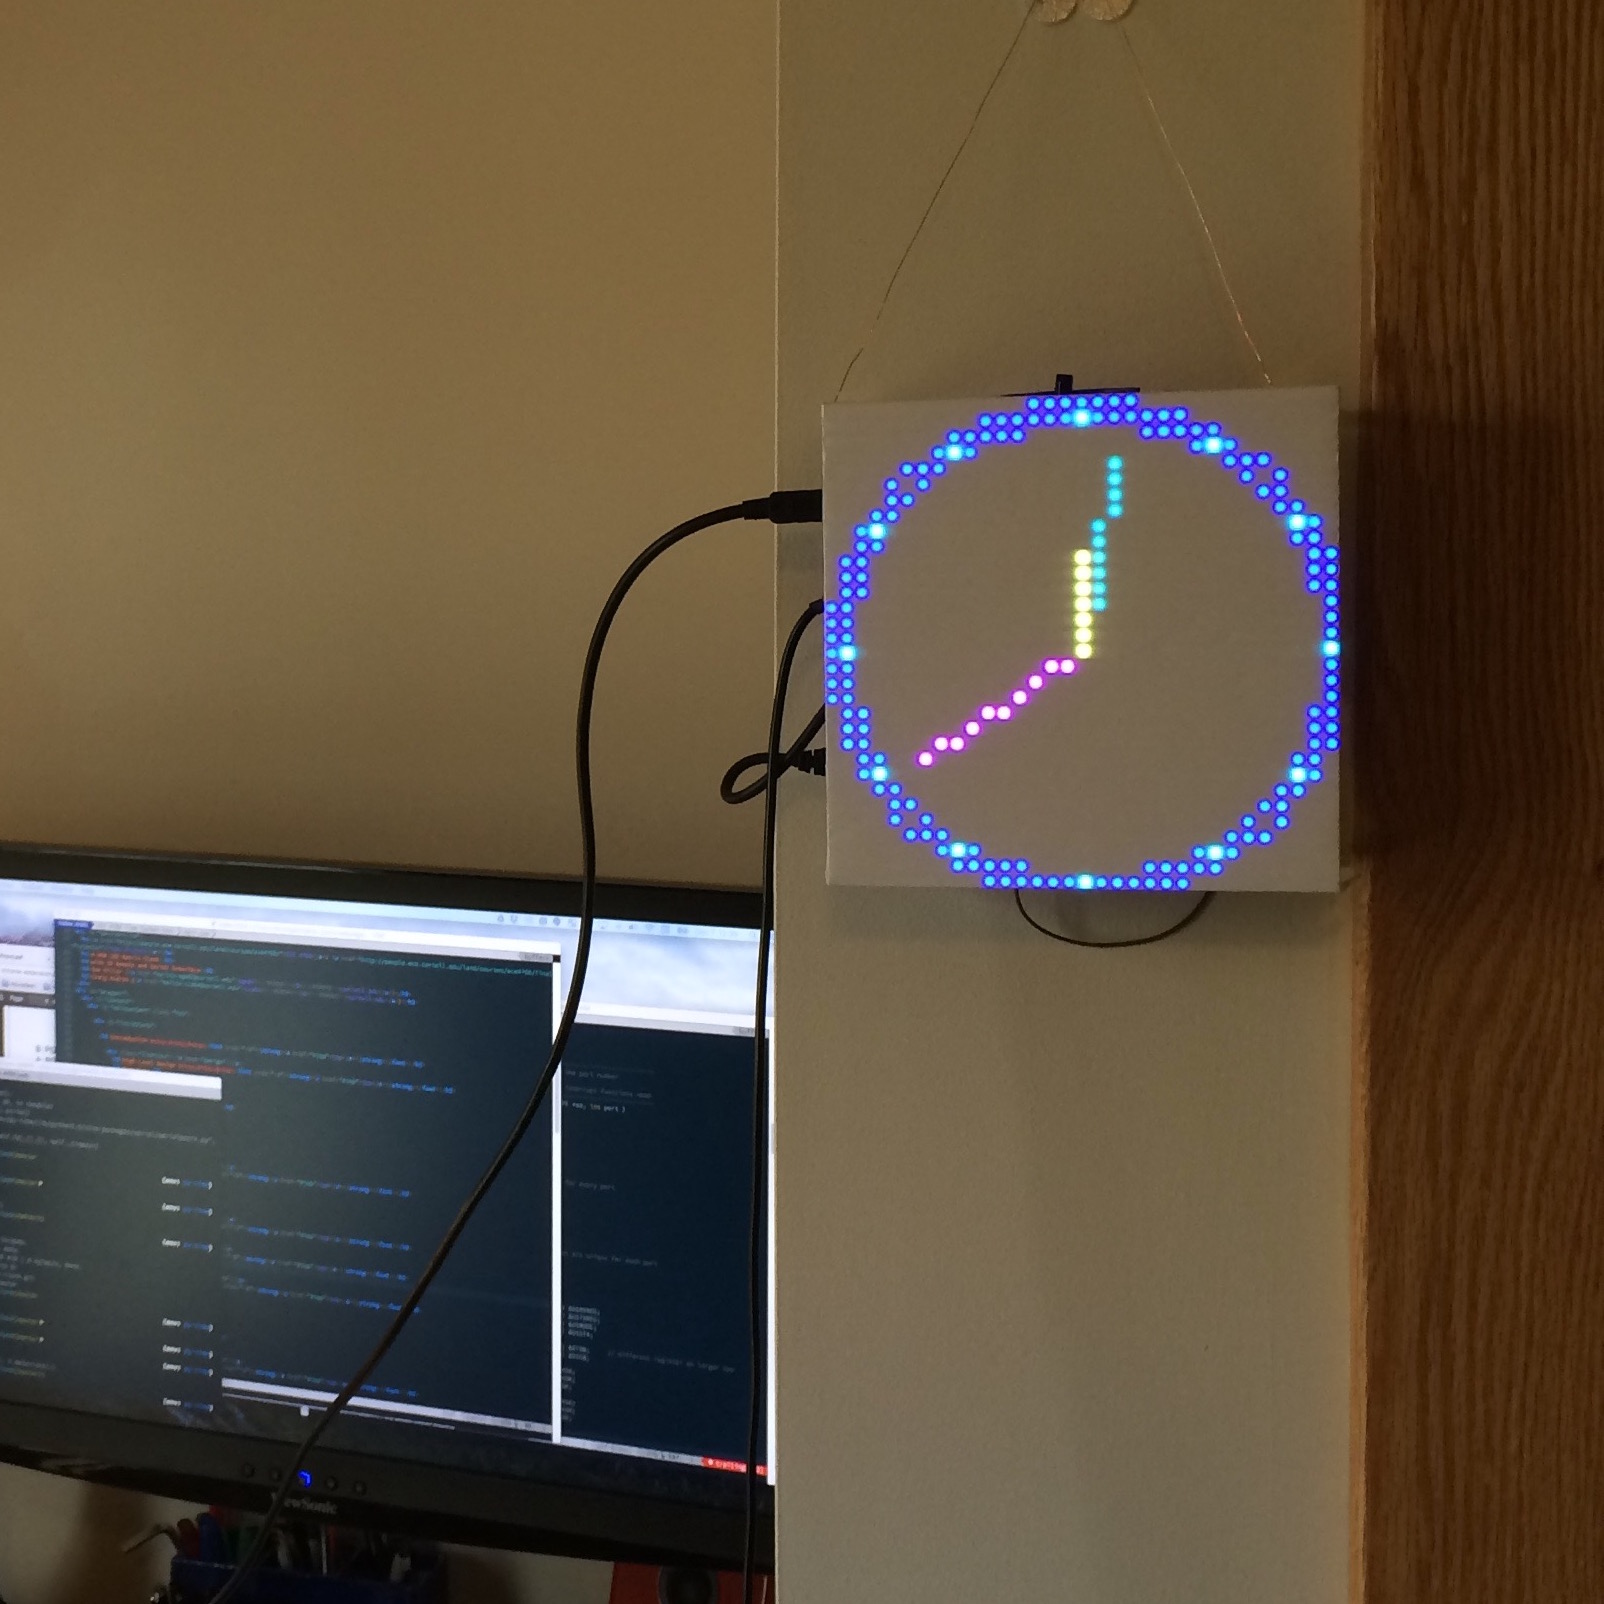 RGB LED Matrix hanging on wall showing analog clock display.